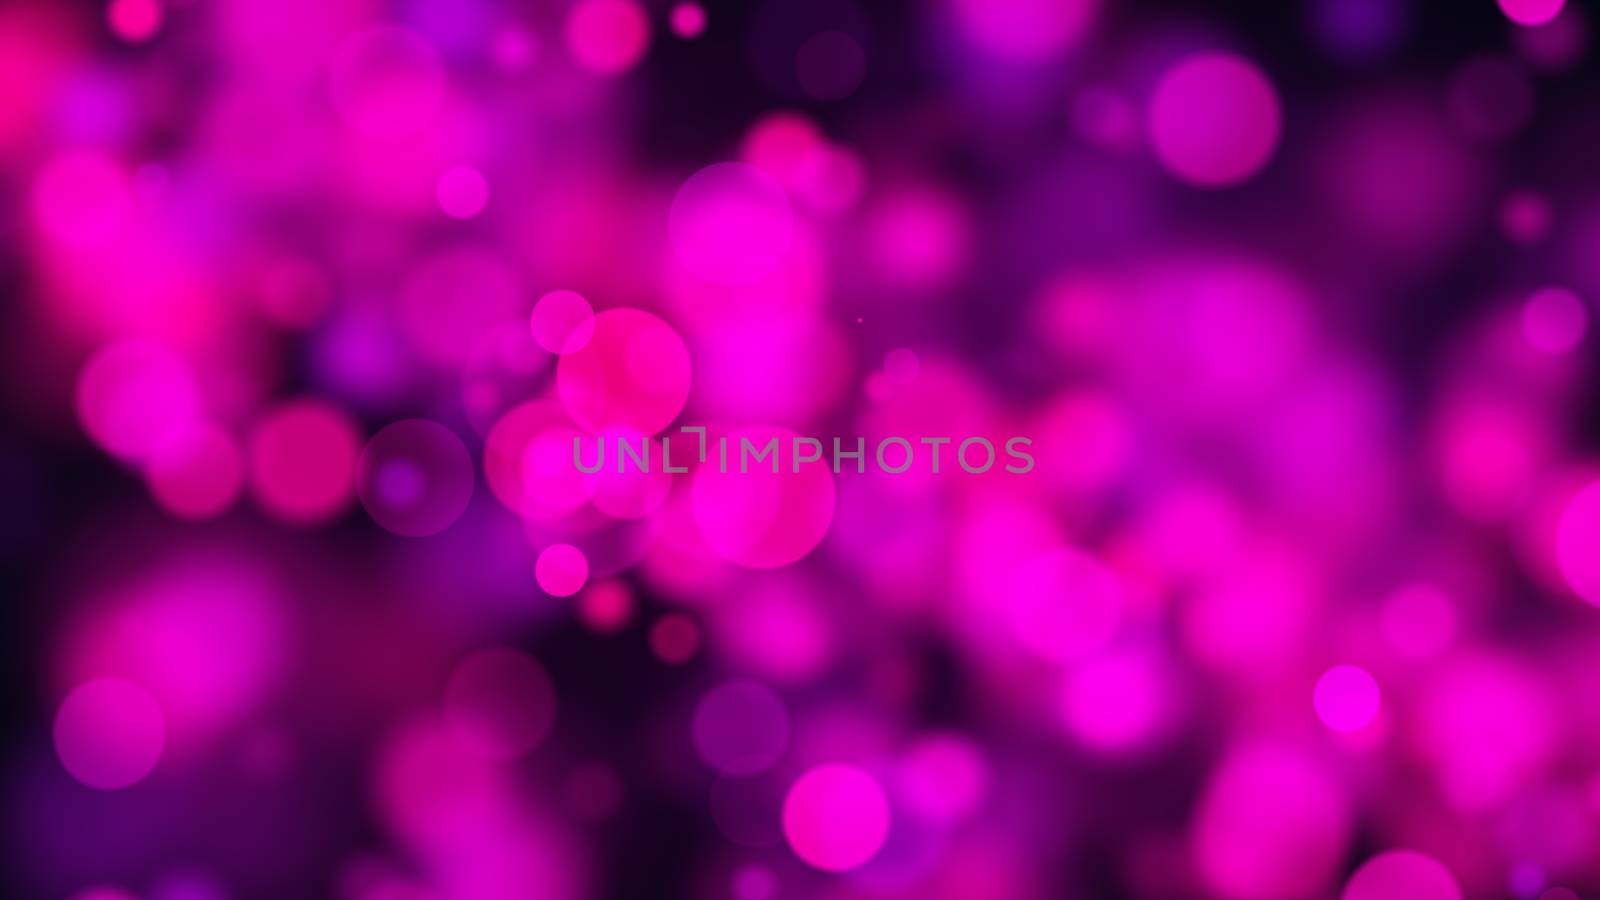 Abstract violet background. Digital illustration backdrop. 3d rendering